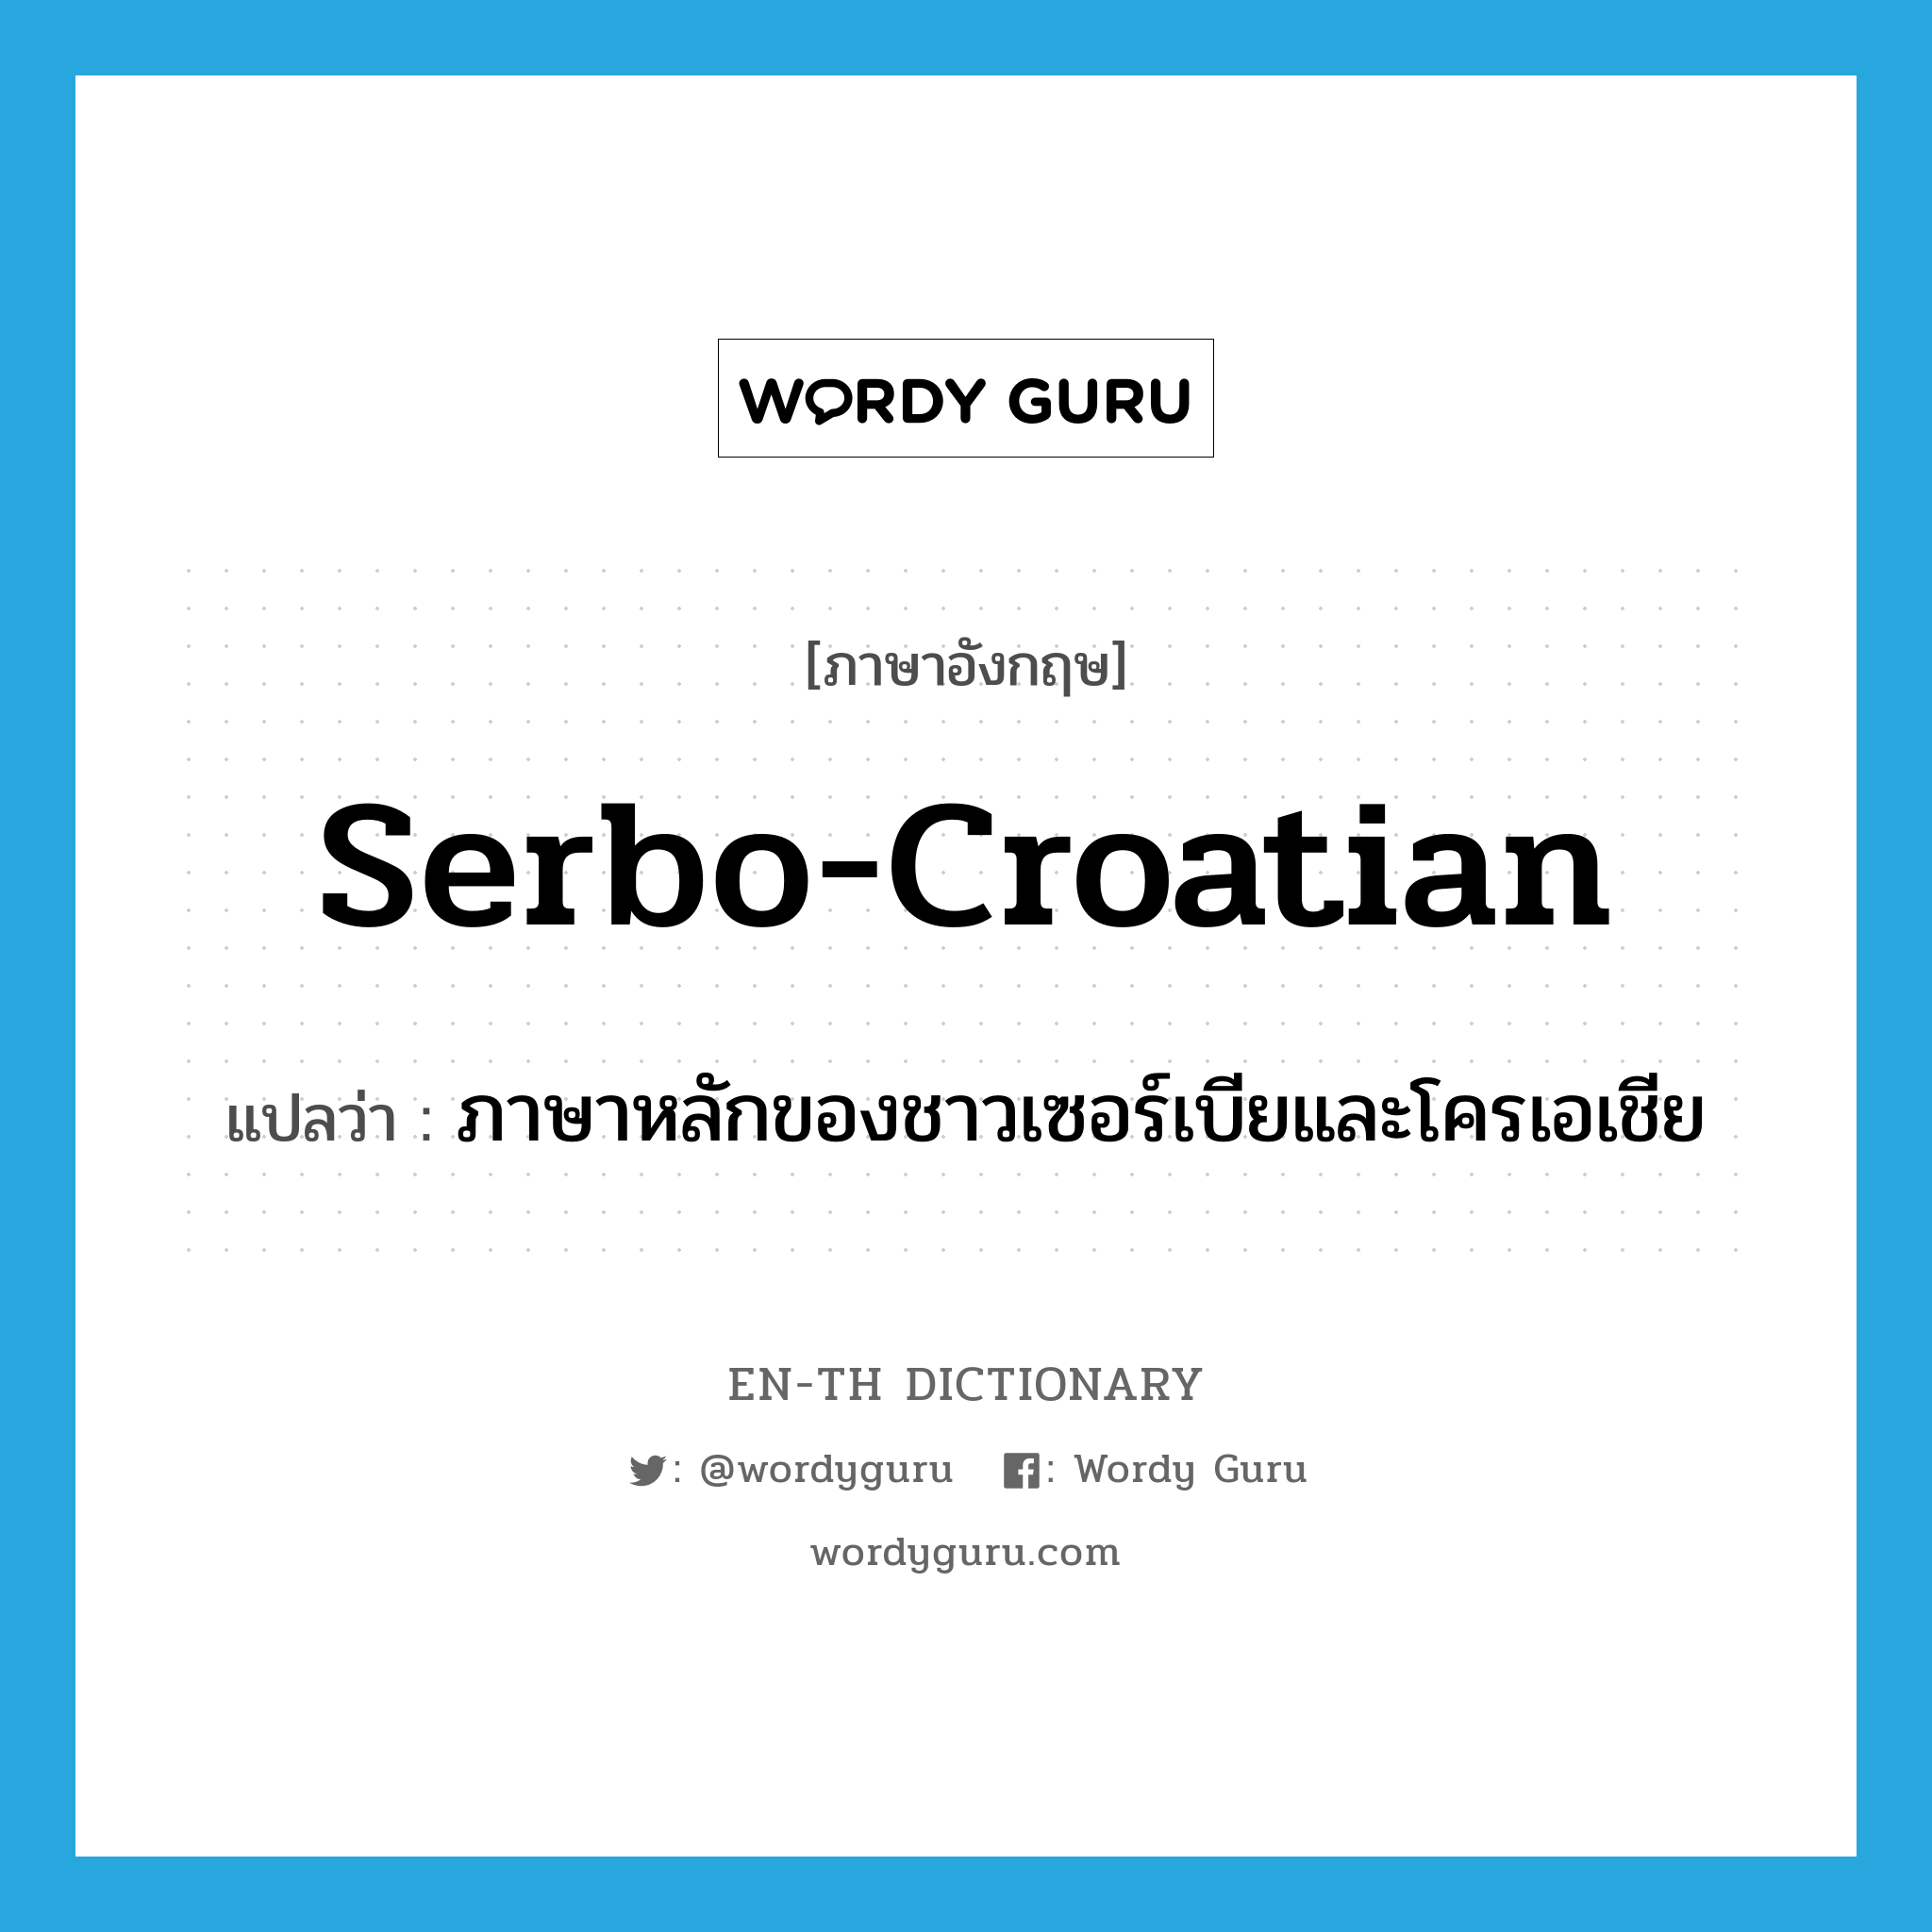 ภาษาหลักของชาวเซอร์เบียและโครเอเชีย ภาษาอังกฤษ?, คำศัพท์ภาษาอังกฤษ ภาษาหลักของชาวเซอร์เบียและโครเอเชีย แปลว่า Serbo-Croatian ประเภท N หมวด N